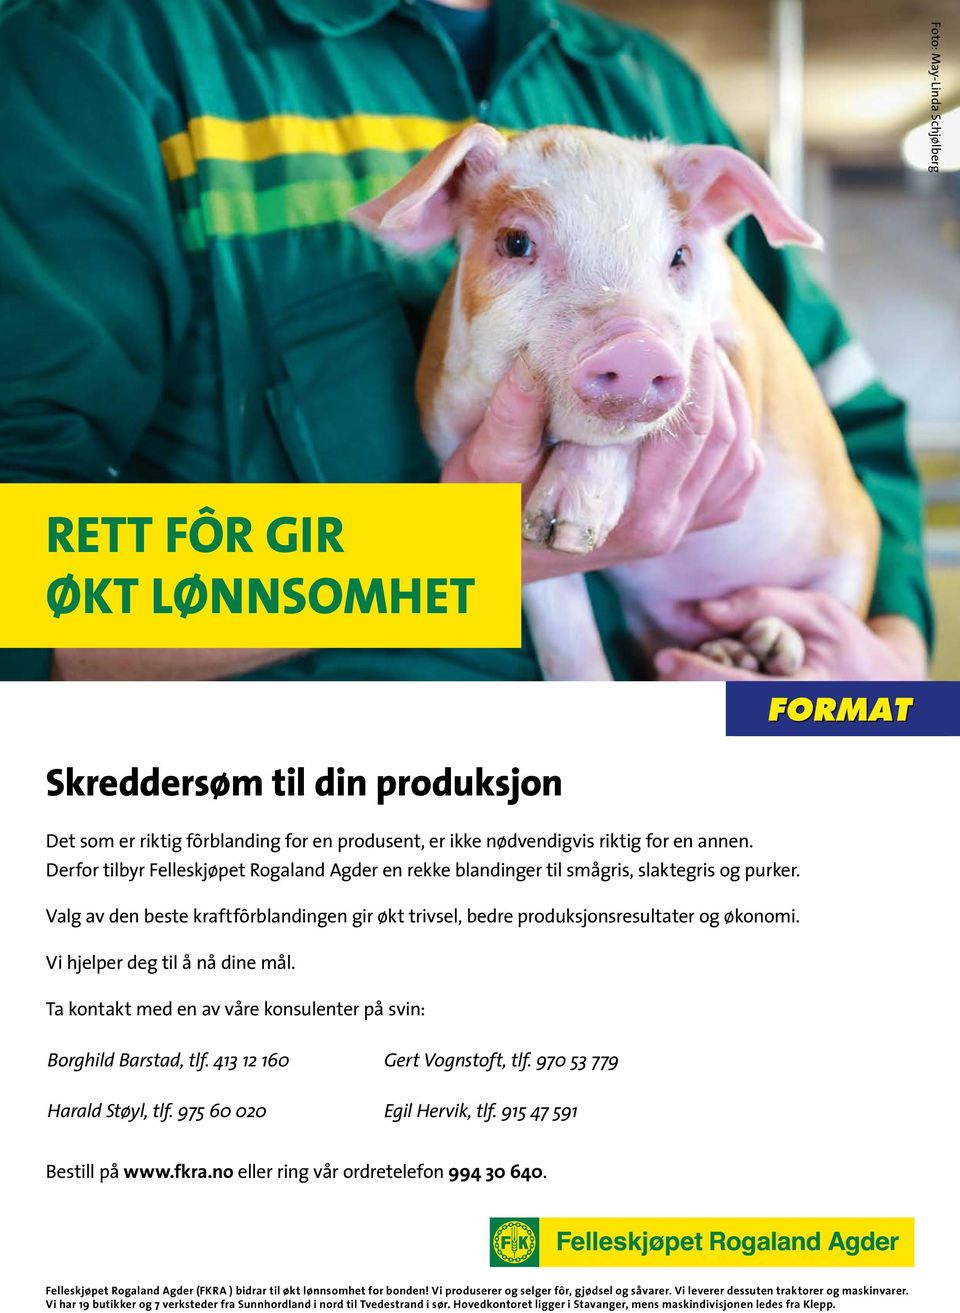 Vi hjelper deg til å nå dine mål. Ta kontakt med en av våre konsulenter på svin: Borghild Barstad, tlf. 413 12 160 Gert Vognstoft, tlf. 970 53 779 Harald Støyl, tlf. 975 60 020 Egil Hervik, tlf.